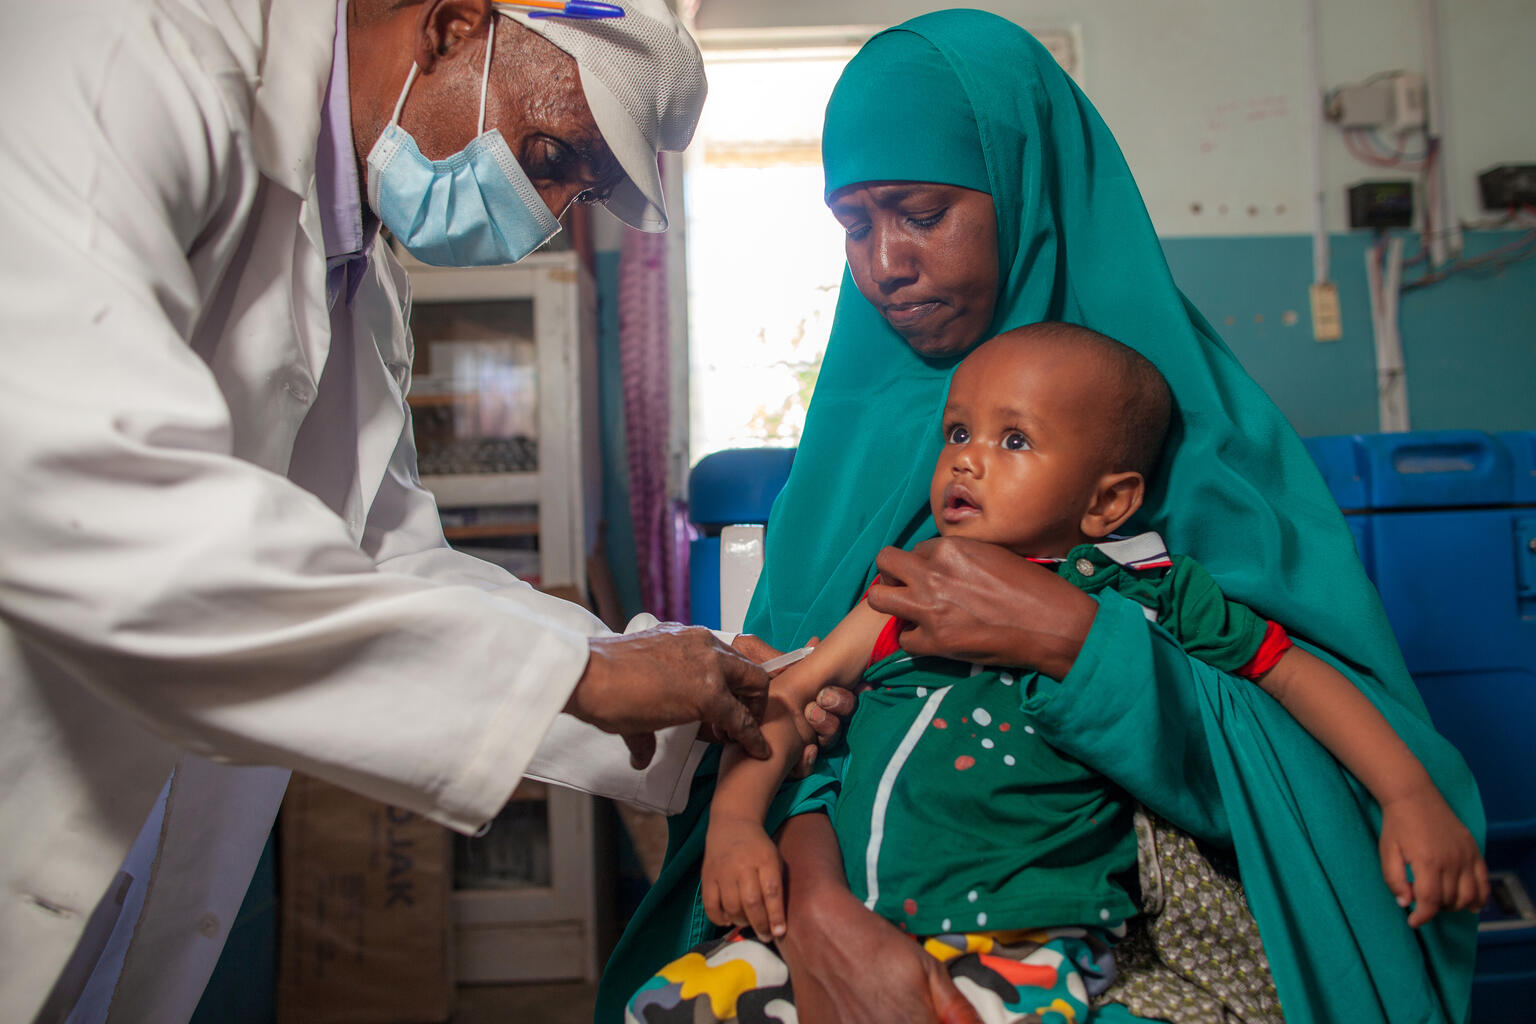 ユニセフが支援する栄養保健センターではしかの予防接種を受ける赤ちゃん。（ソマリア、2021年2月撮影）